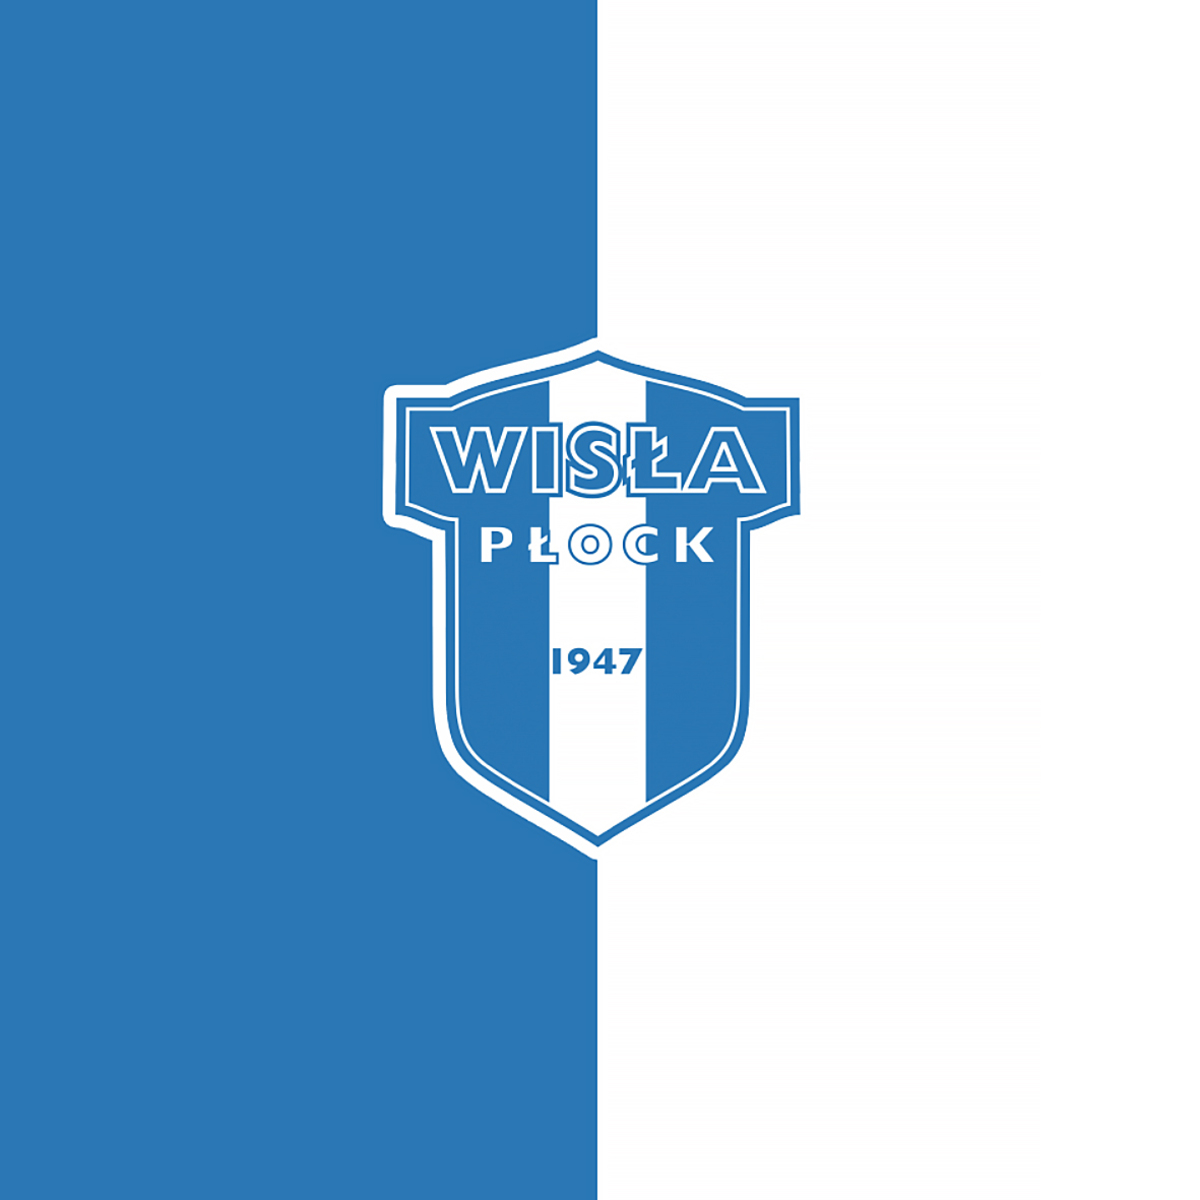 wisla-plock-22-football-club-facts